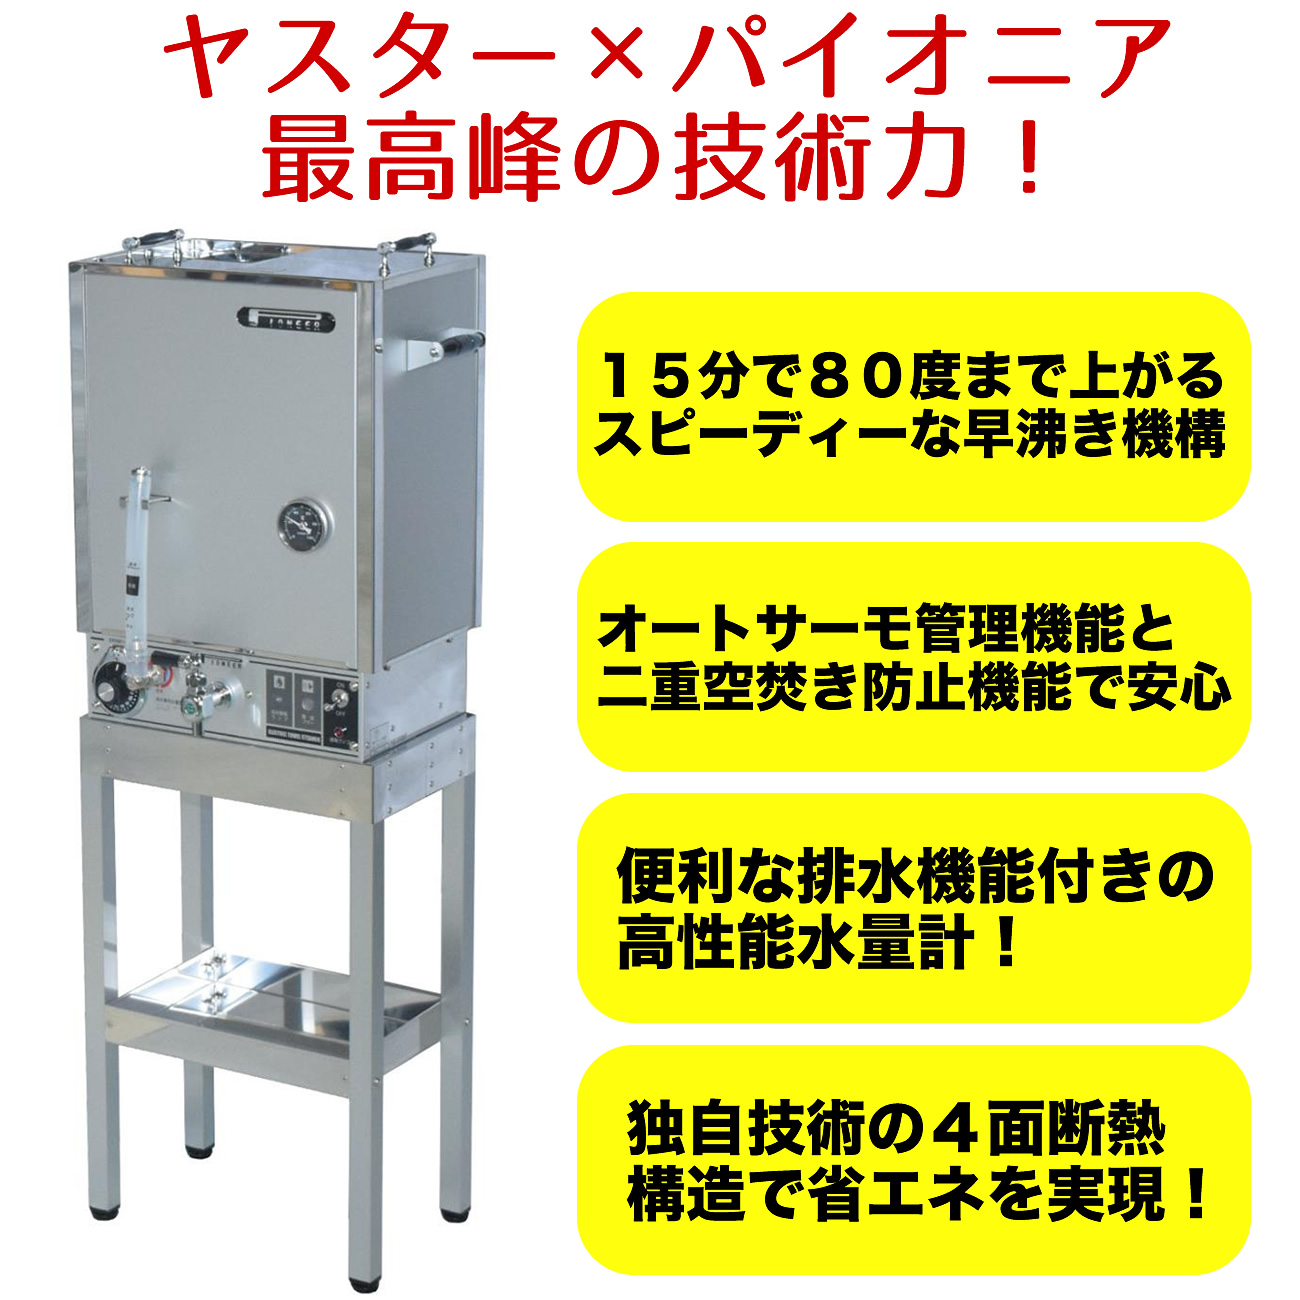 タオル蒸し器 早沸き 理容 床屋 バーバー 日本製 電気式 パイオニア 